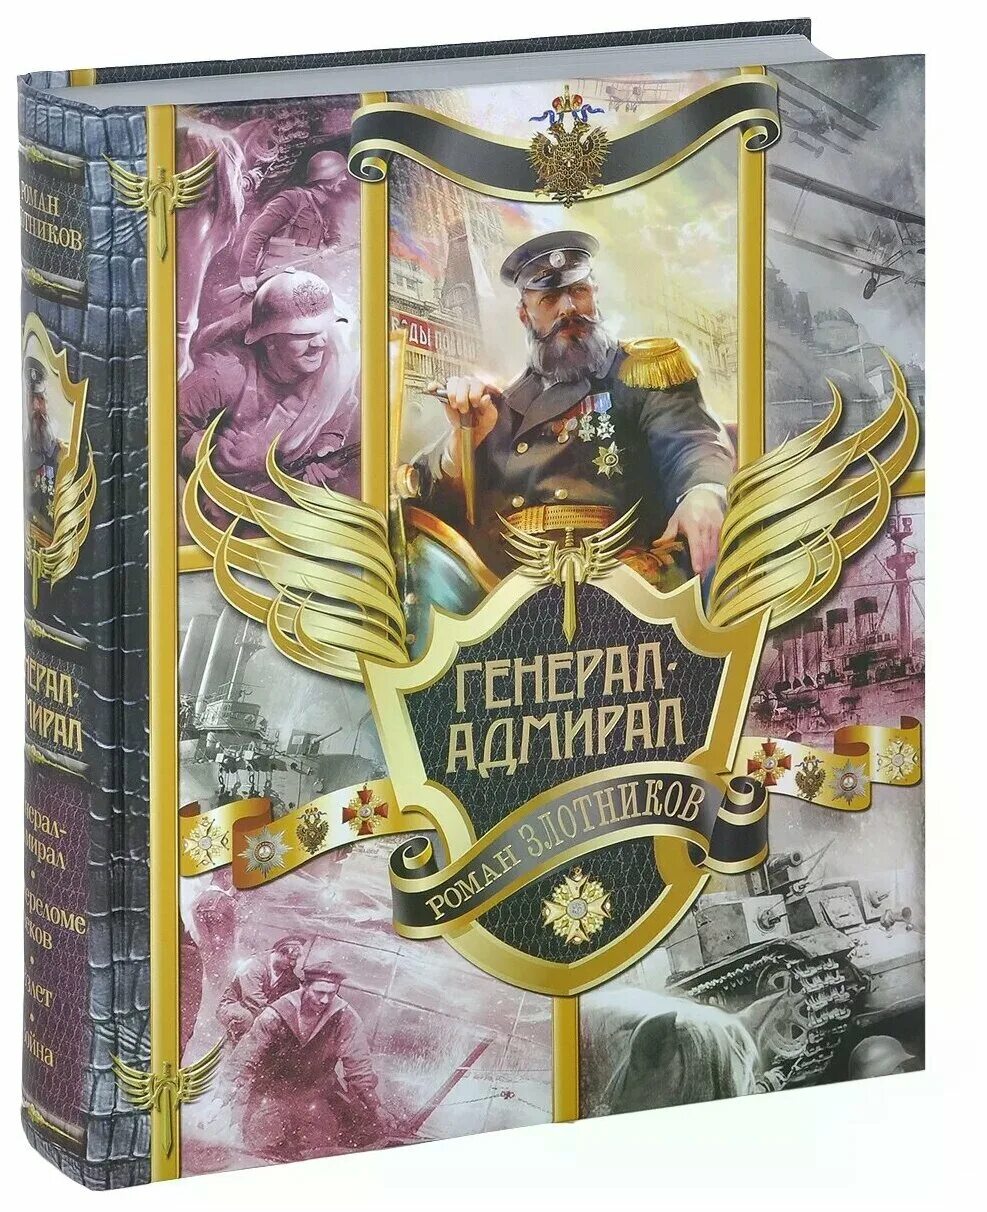 Адмирал книги слушать. Ром Злотников генерал Адмирал. Генерал-Адмирал Злотников книга 5.